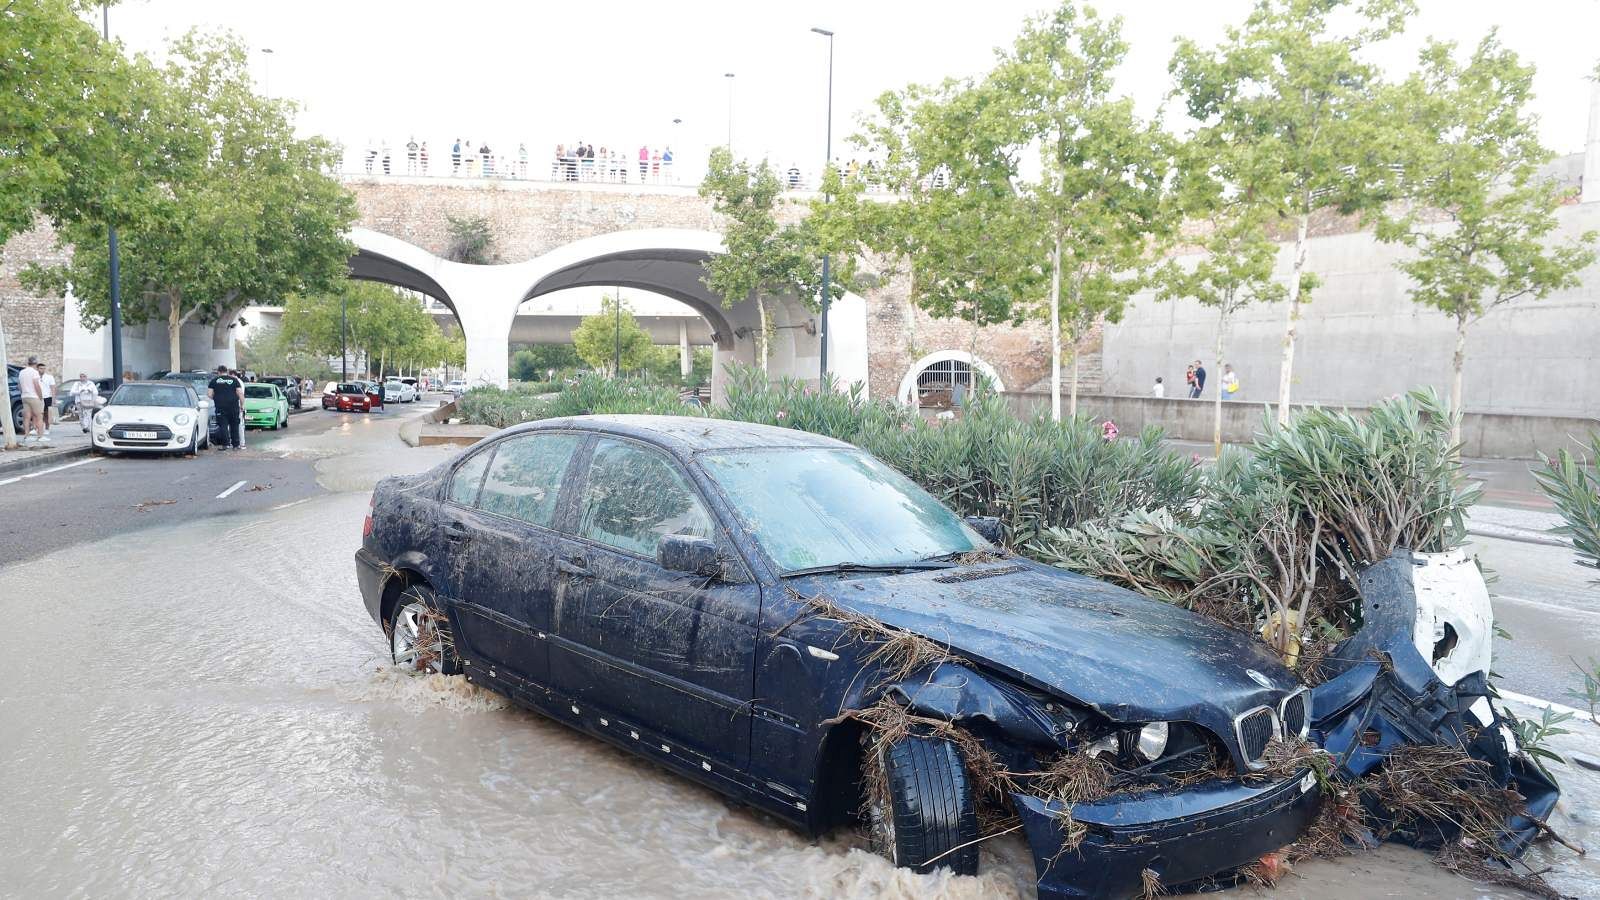 Una fuerte tormenta con granizo provoca inundaciones y daños en varios puntos de Zaragoza